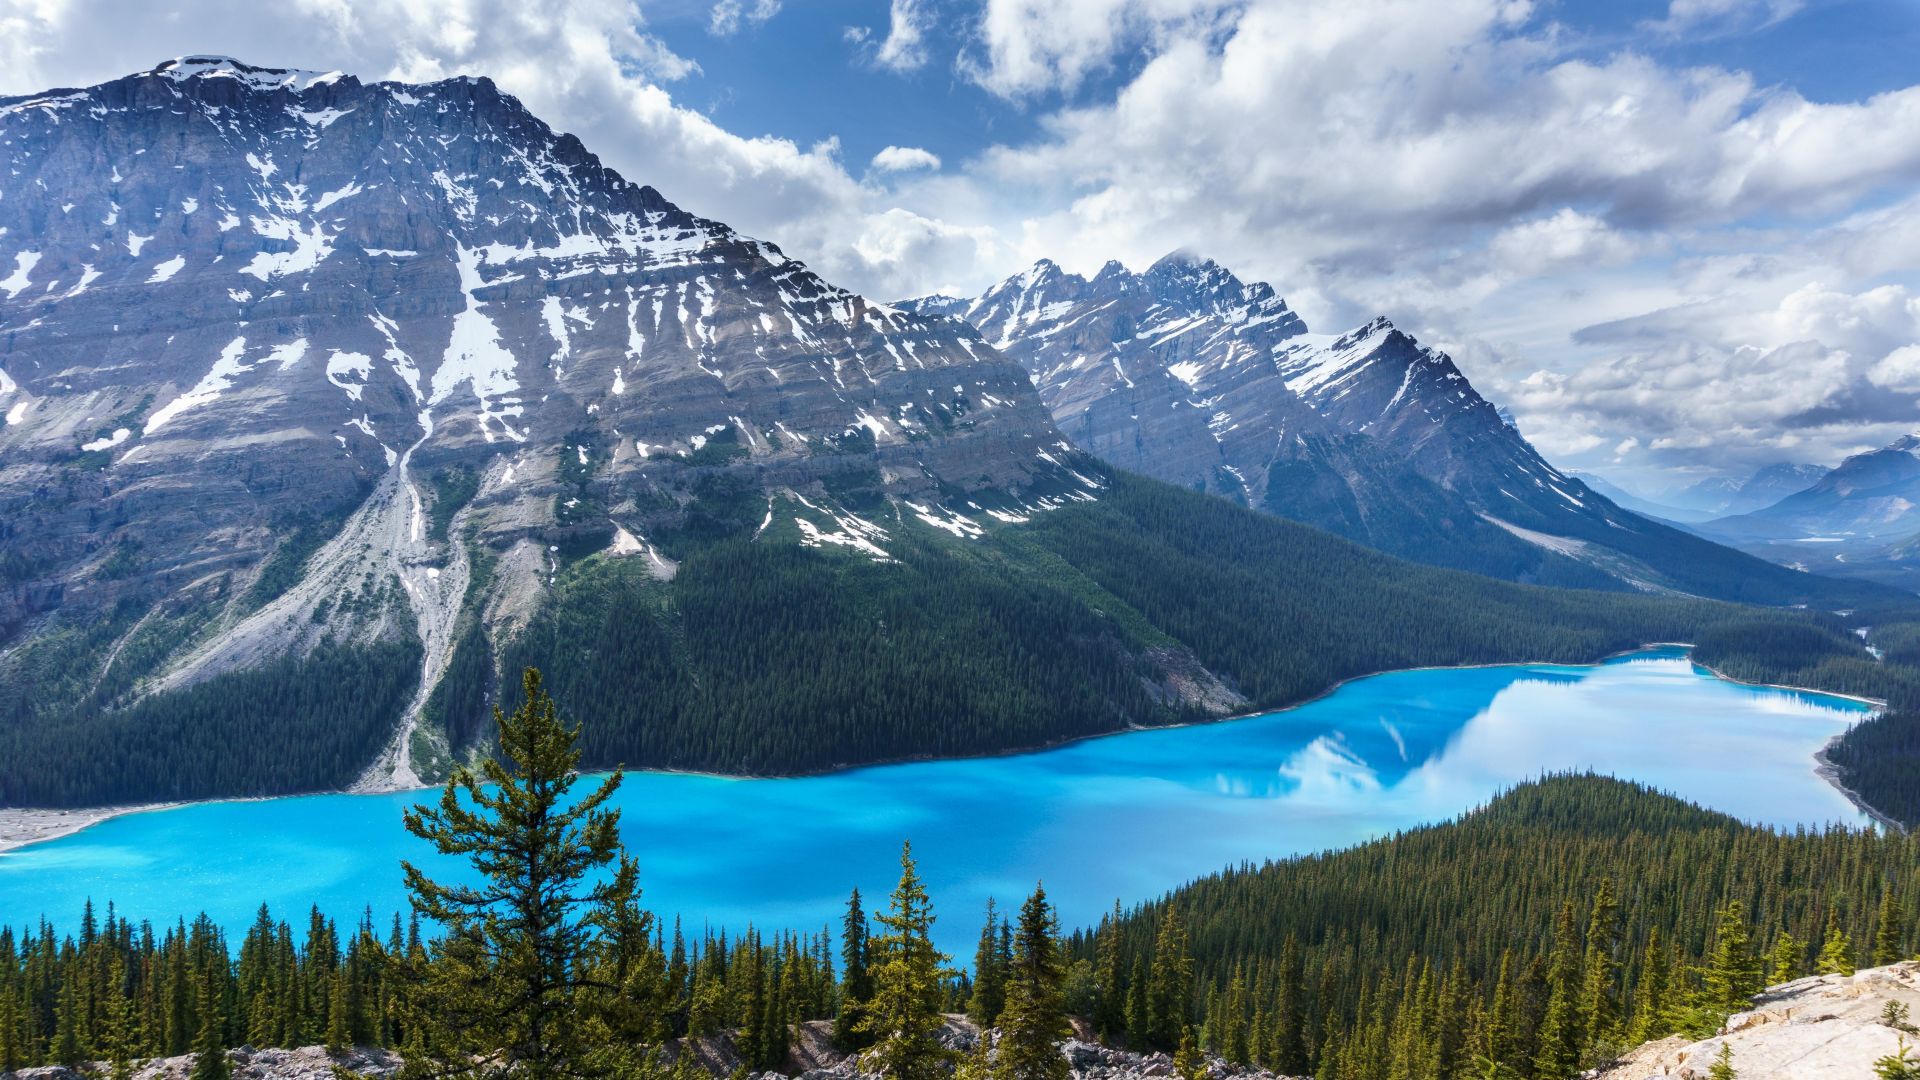 Desktop Wallpaper Rocky Mountains Of Banff National Park Hd - 